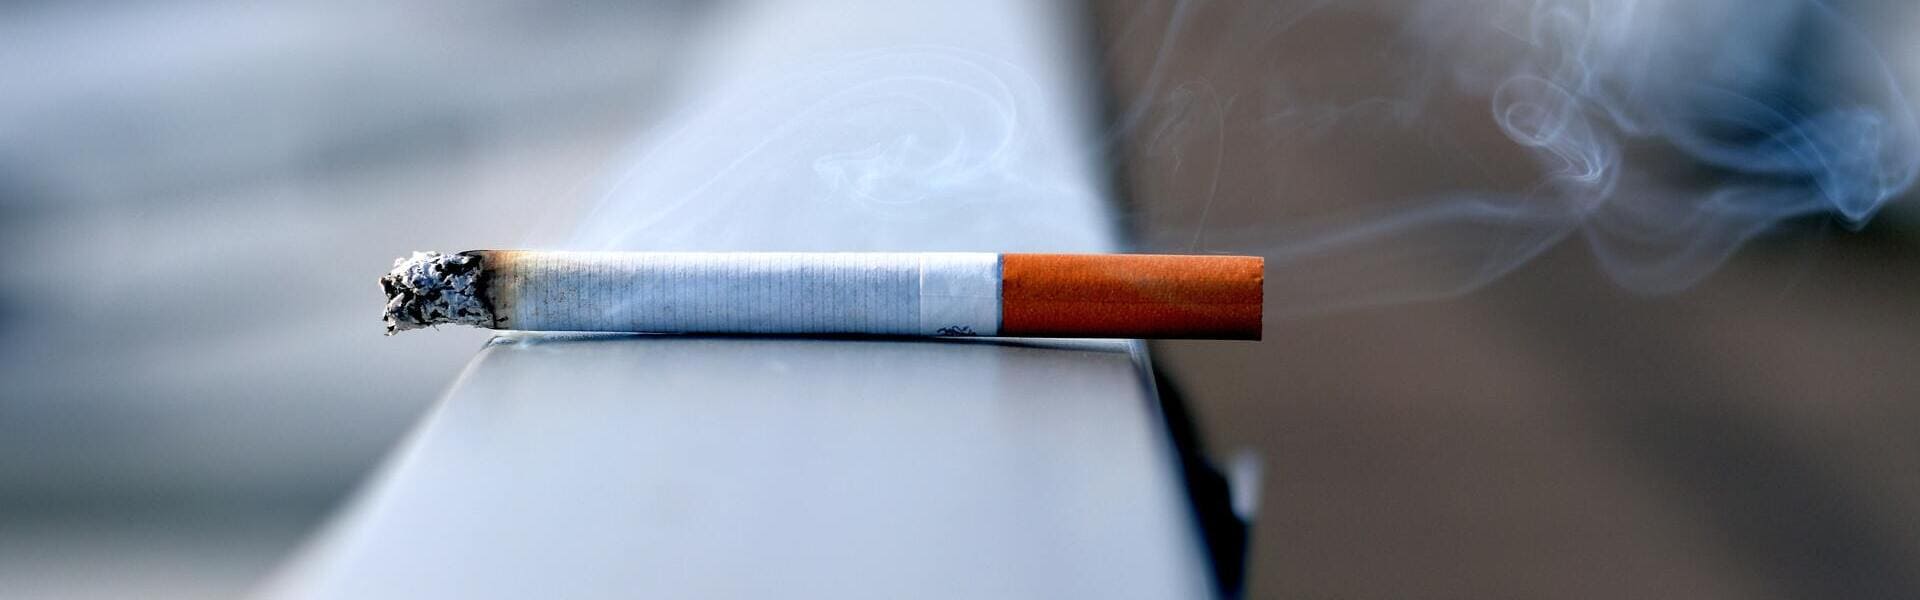 CBD : une aide pour arrêter de fumer d'après une nouvelle étude